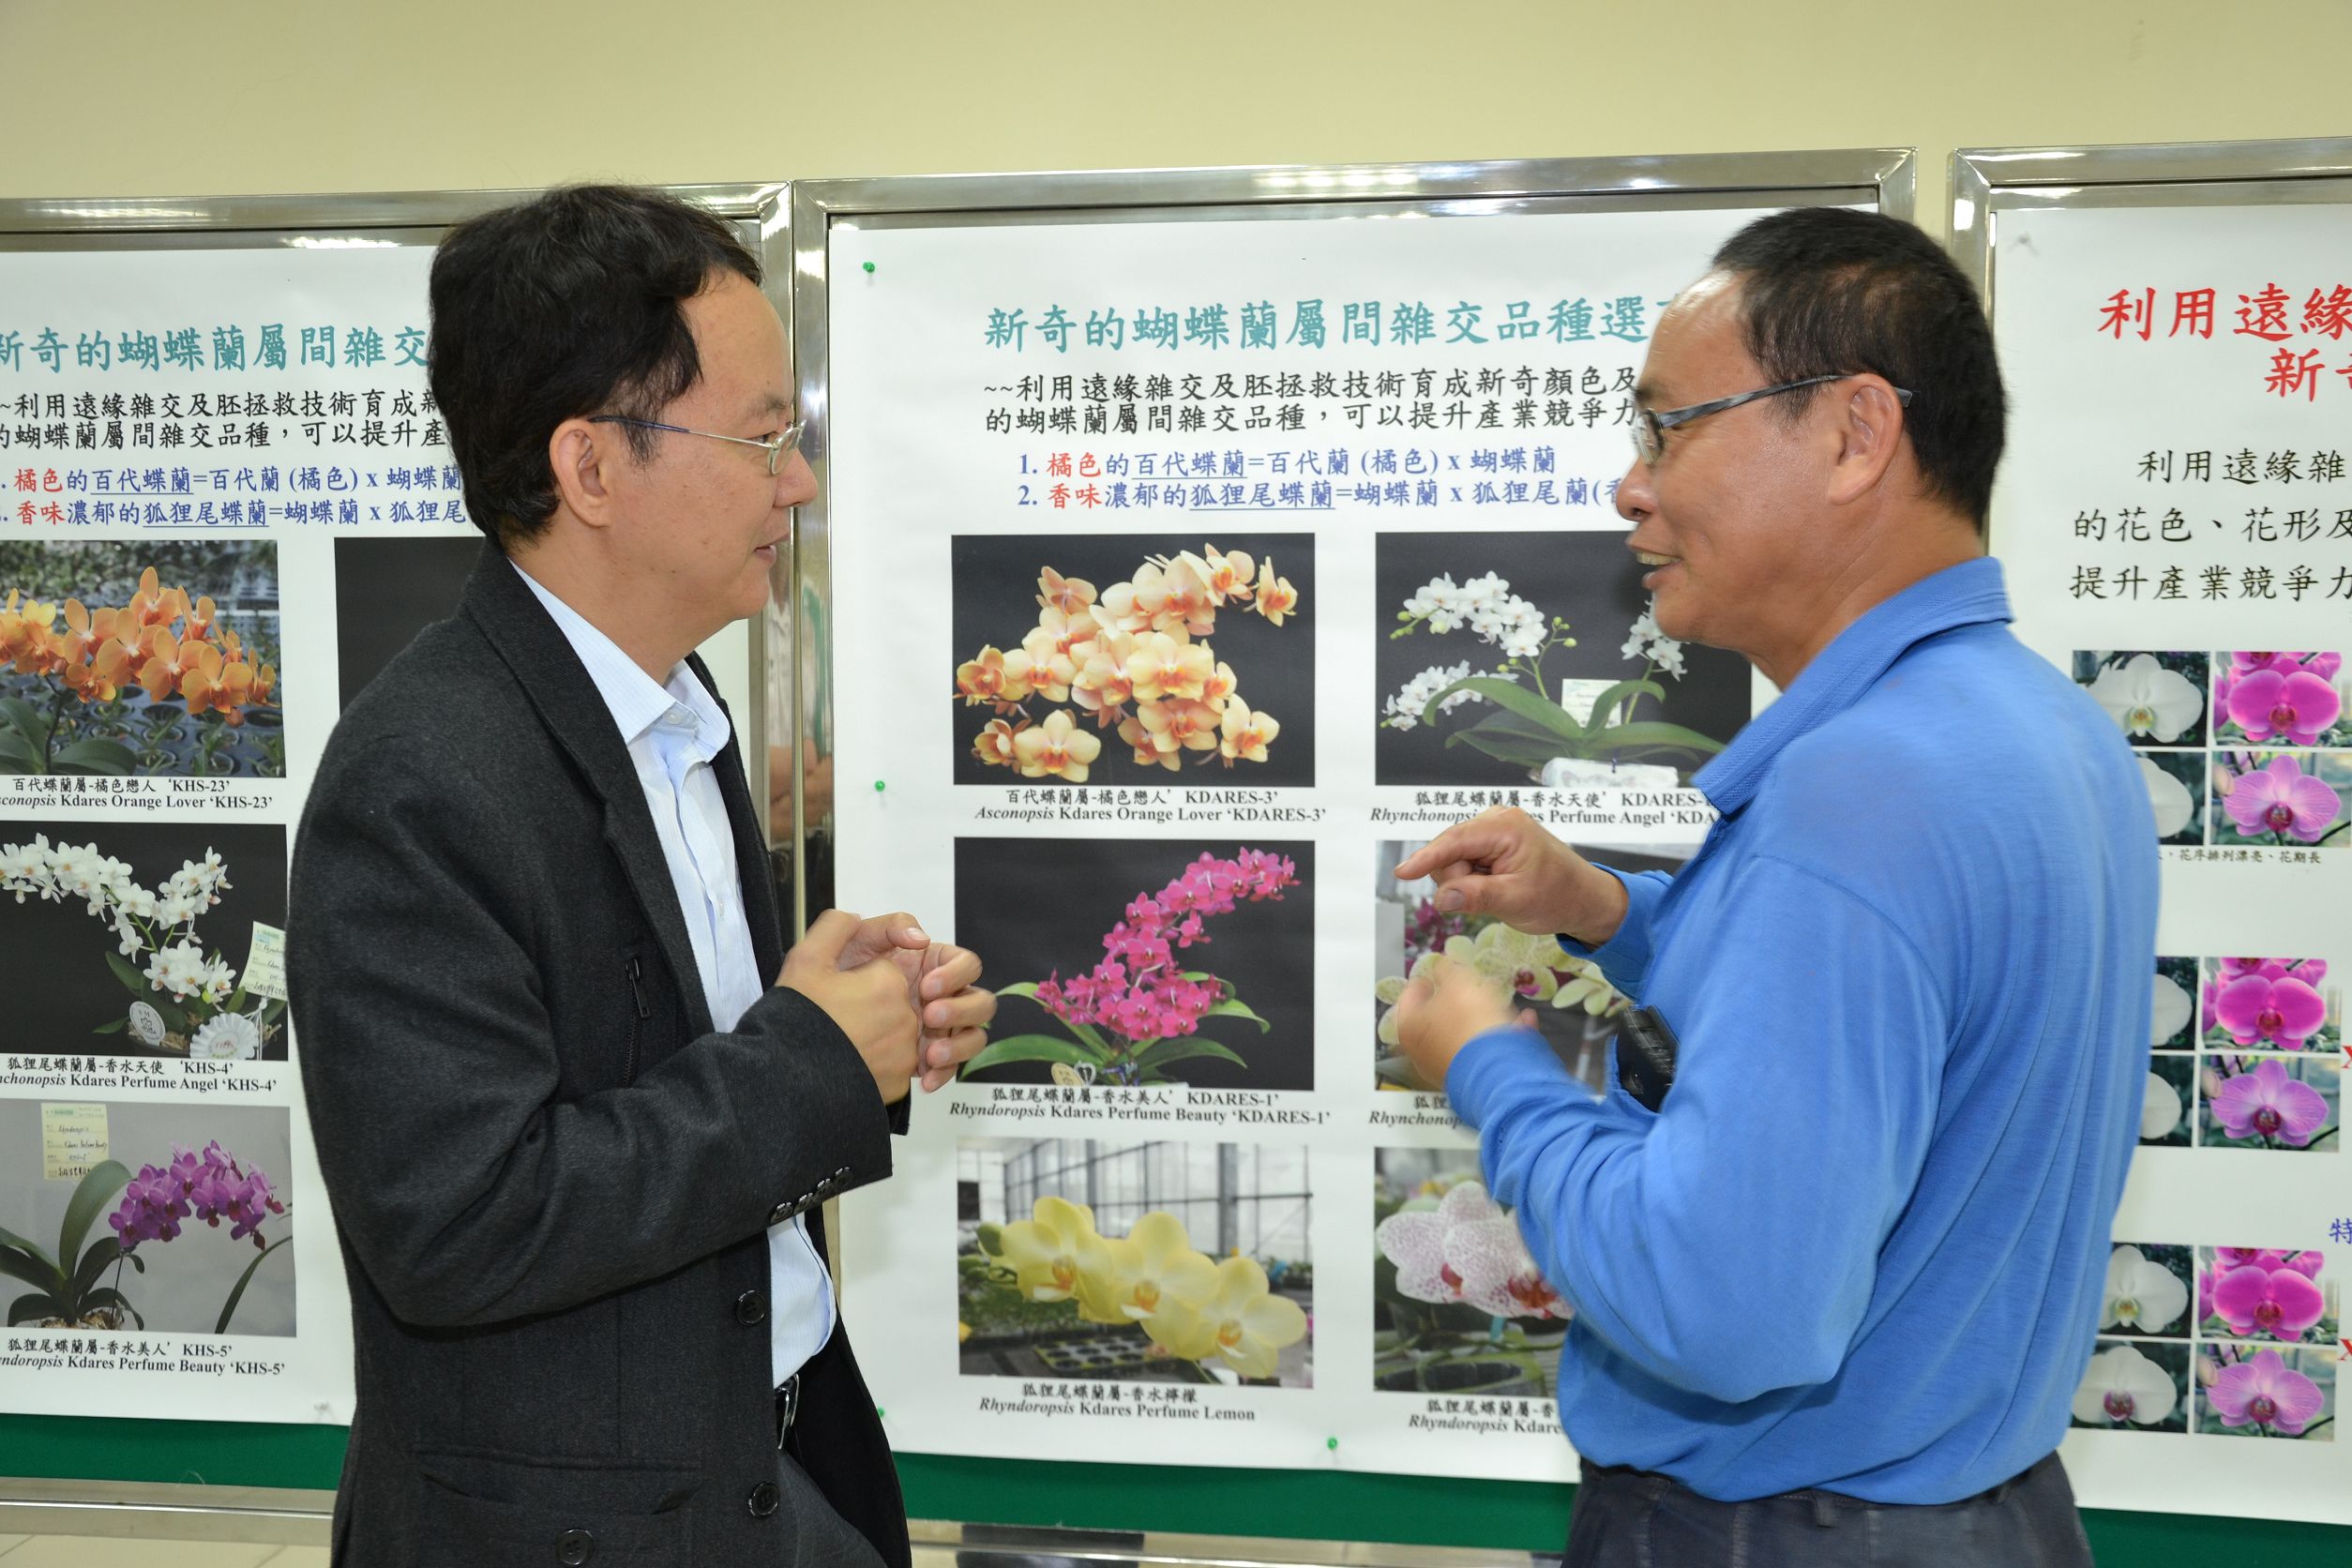 蔡奇助副研究員與業者討論嶄新蝴蝶蘭育種方向